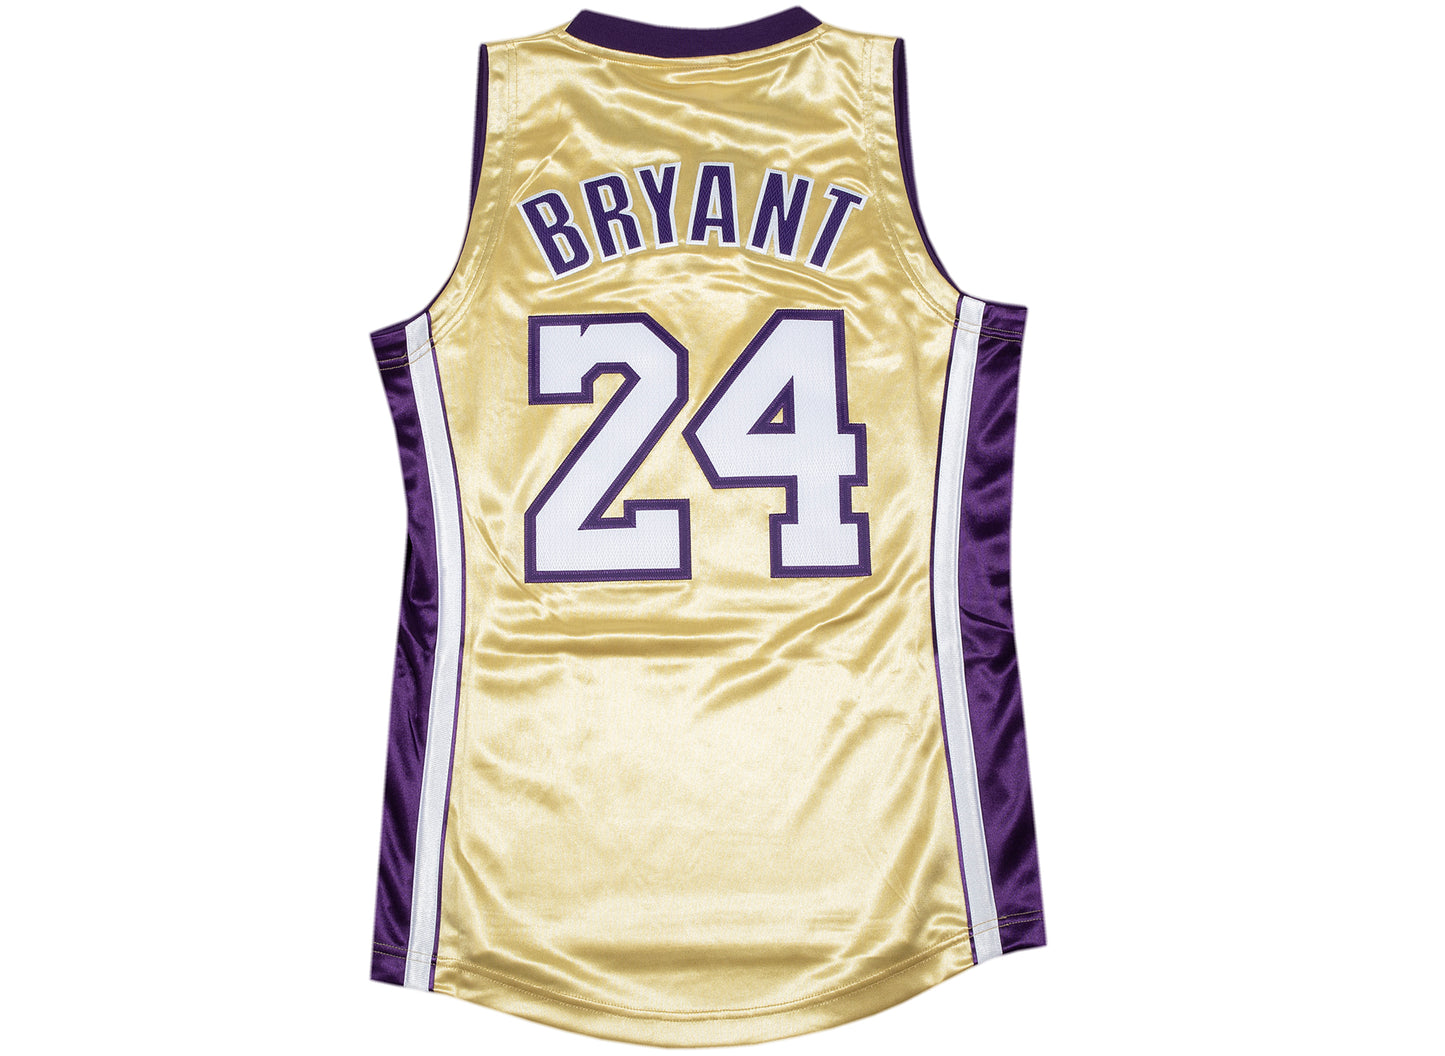 Kobe Bryant jersey  Kobe bryant, Kobe, Bryant